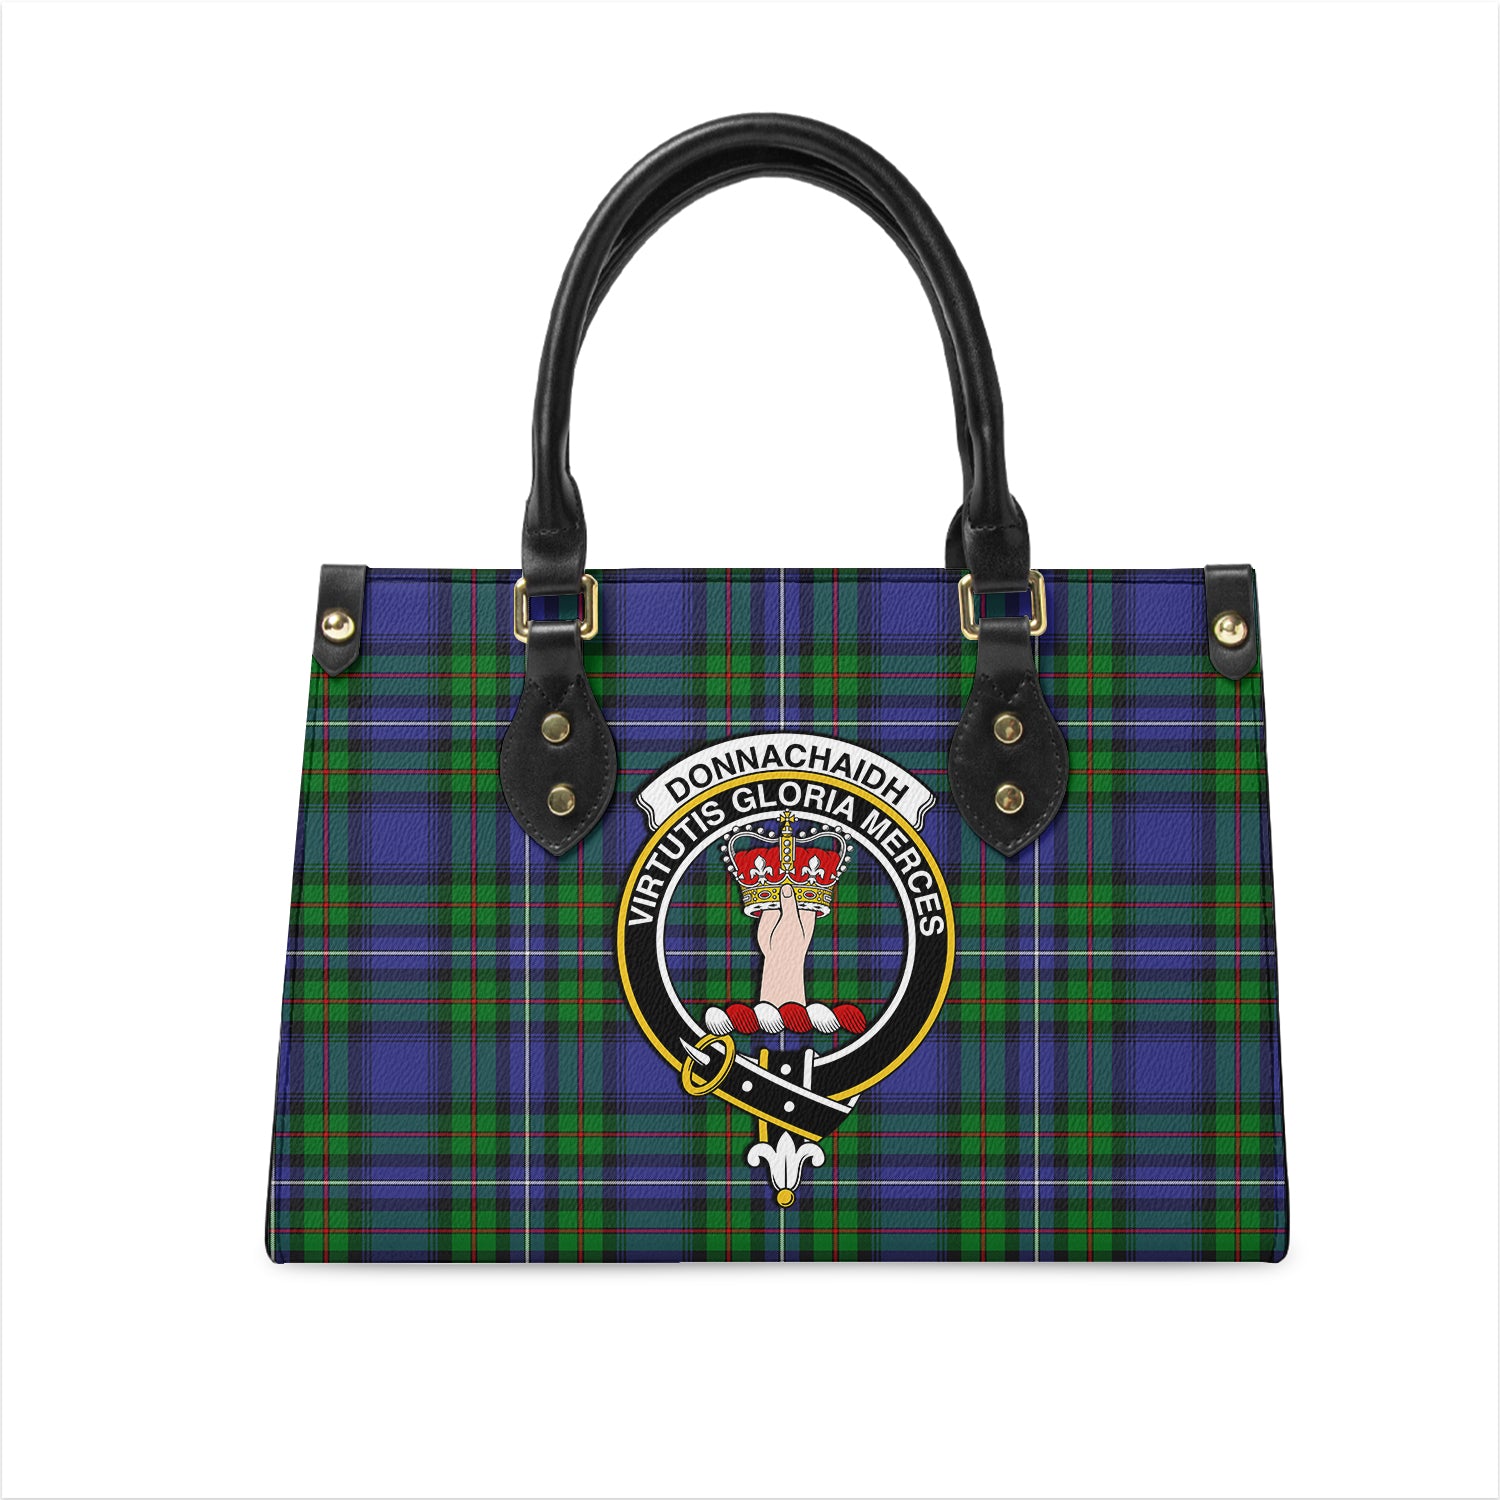 donnachaidh-tartan-leather-bag-with-family-crest